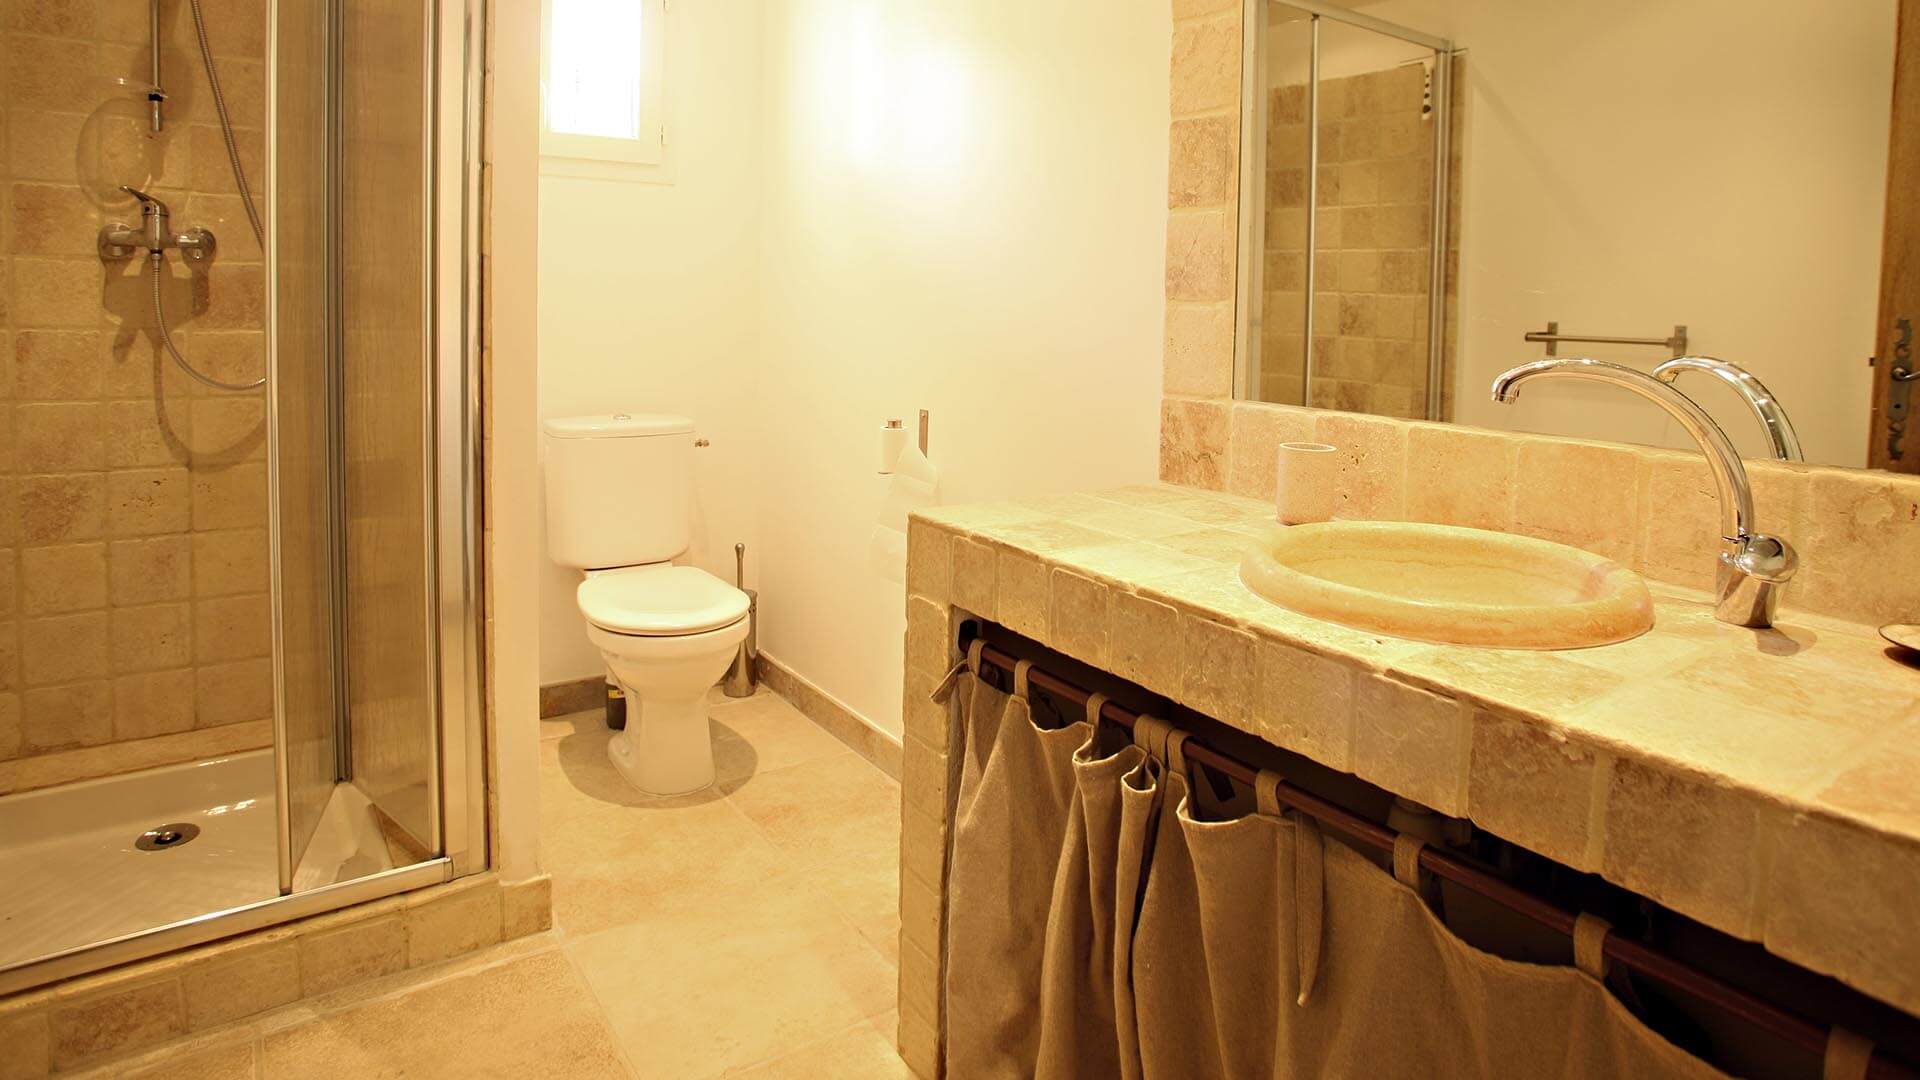 Location vacances Provence | Villa le mûrier blanc | Salle de bain avec douche et toilettes